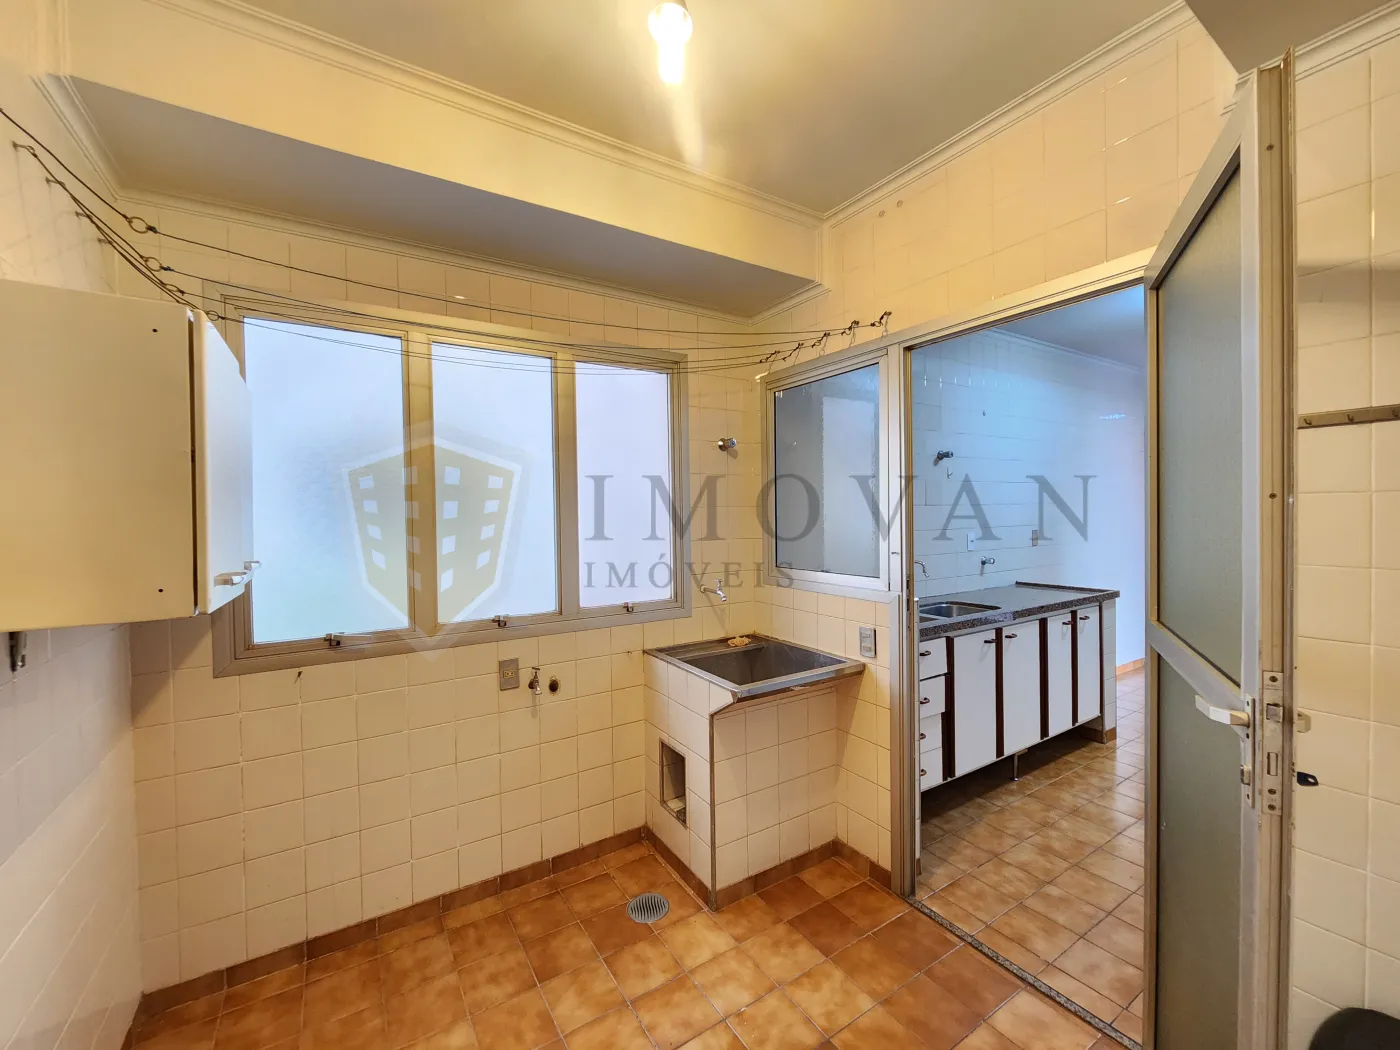 Alugar Apartamento / Padrão em Ribeirão Preto R$ 1.100,00 - Foto 5